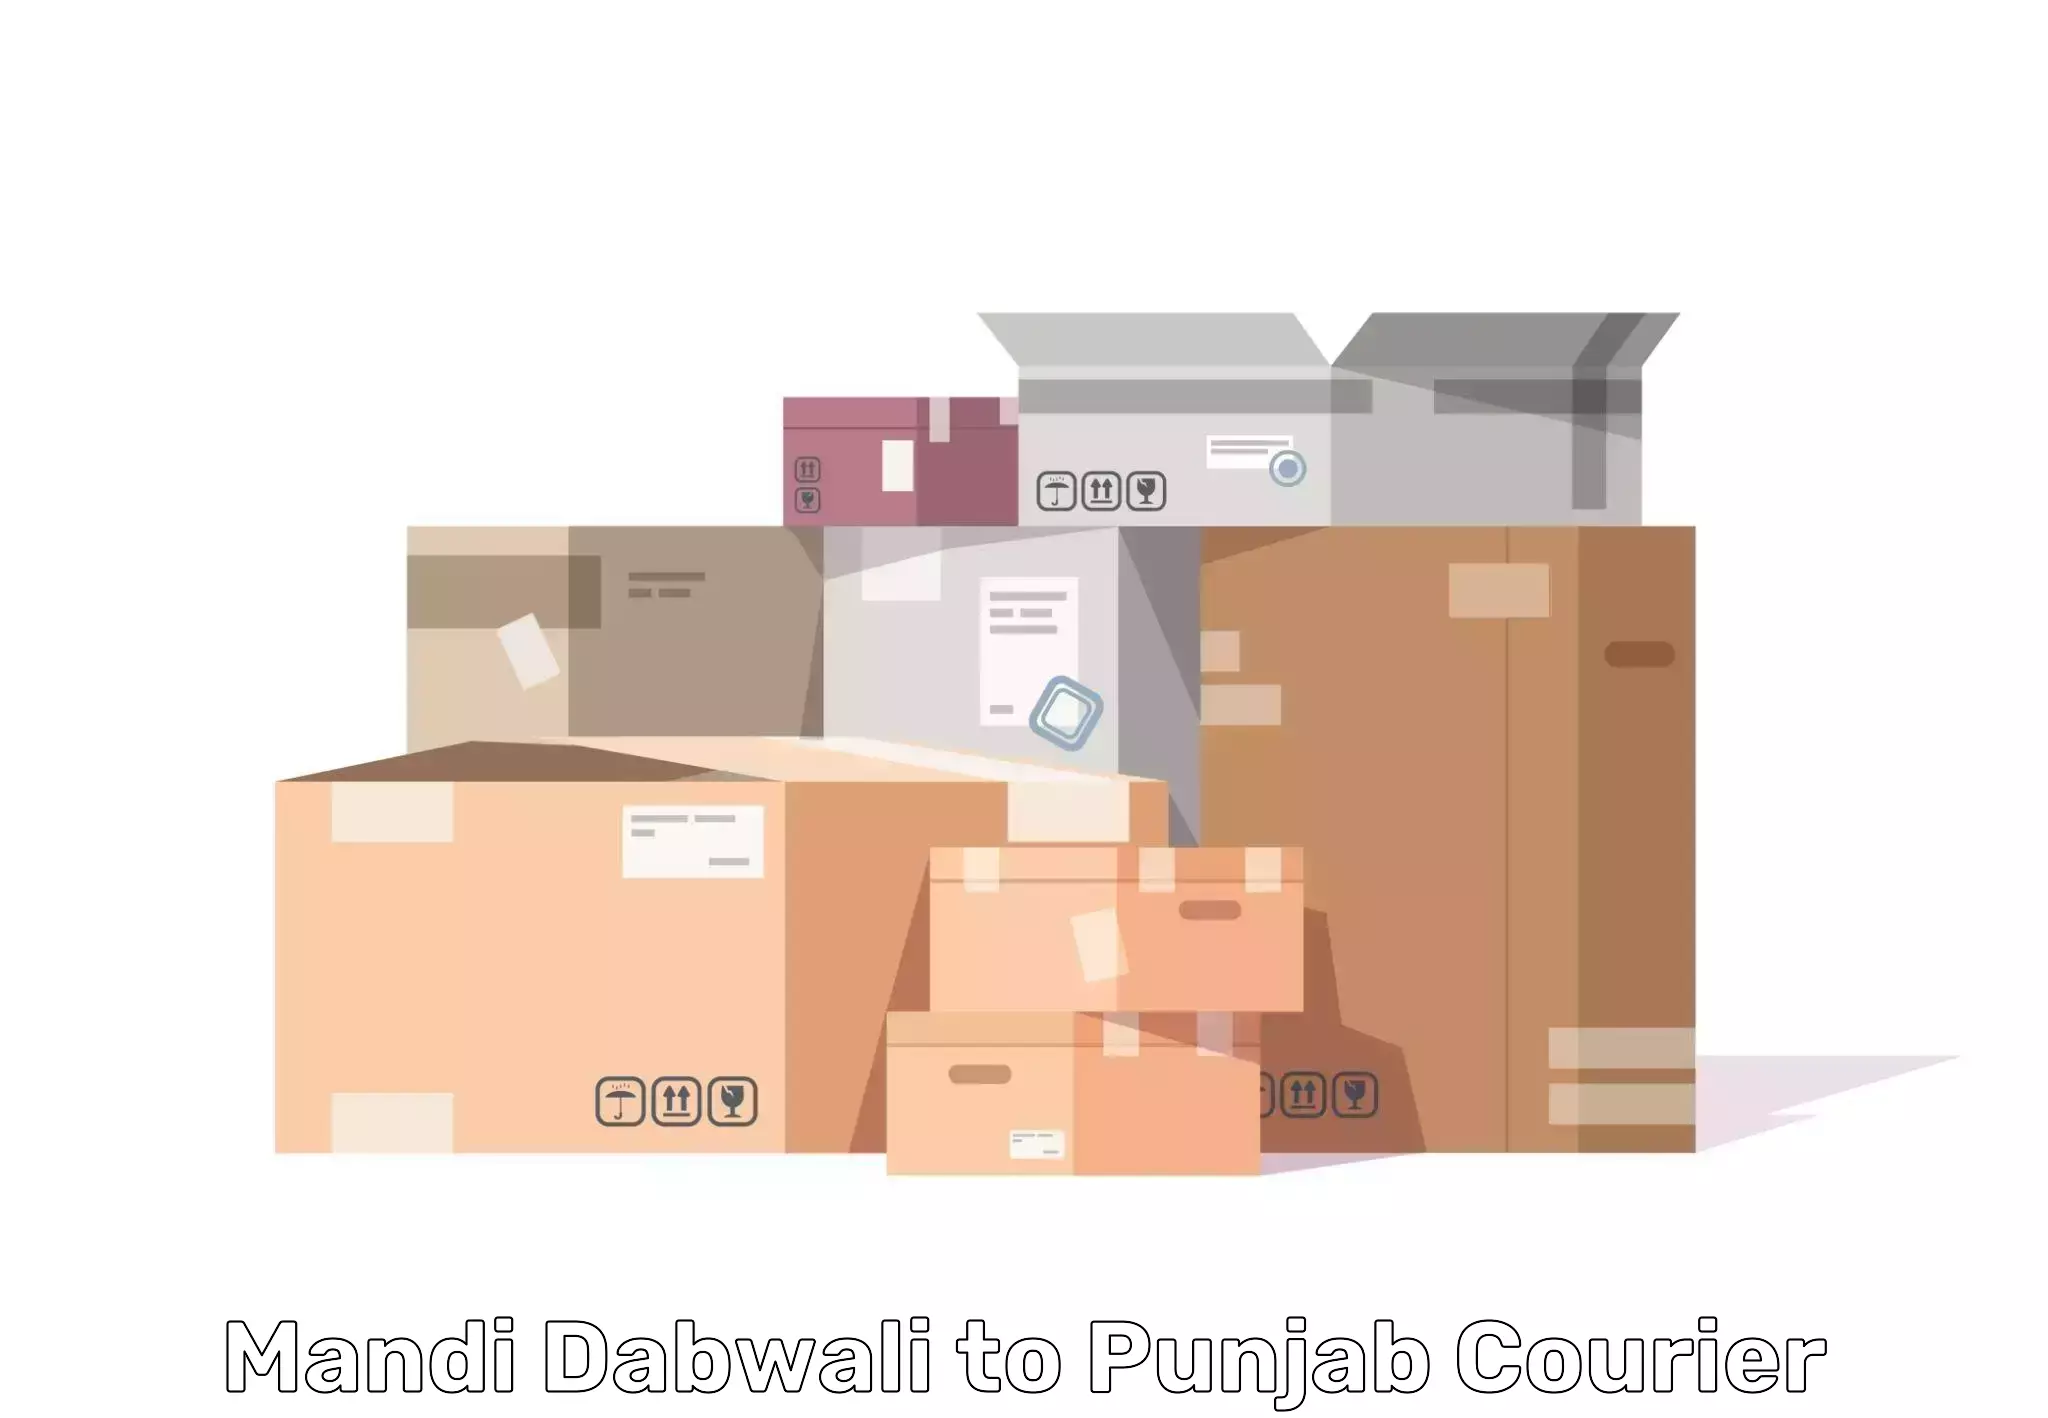 Furniture transport specialists Mandi Dabwali to Rupnagar